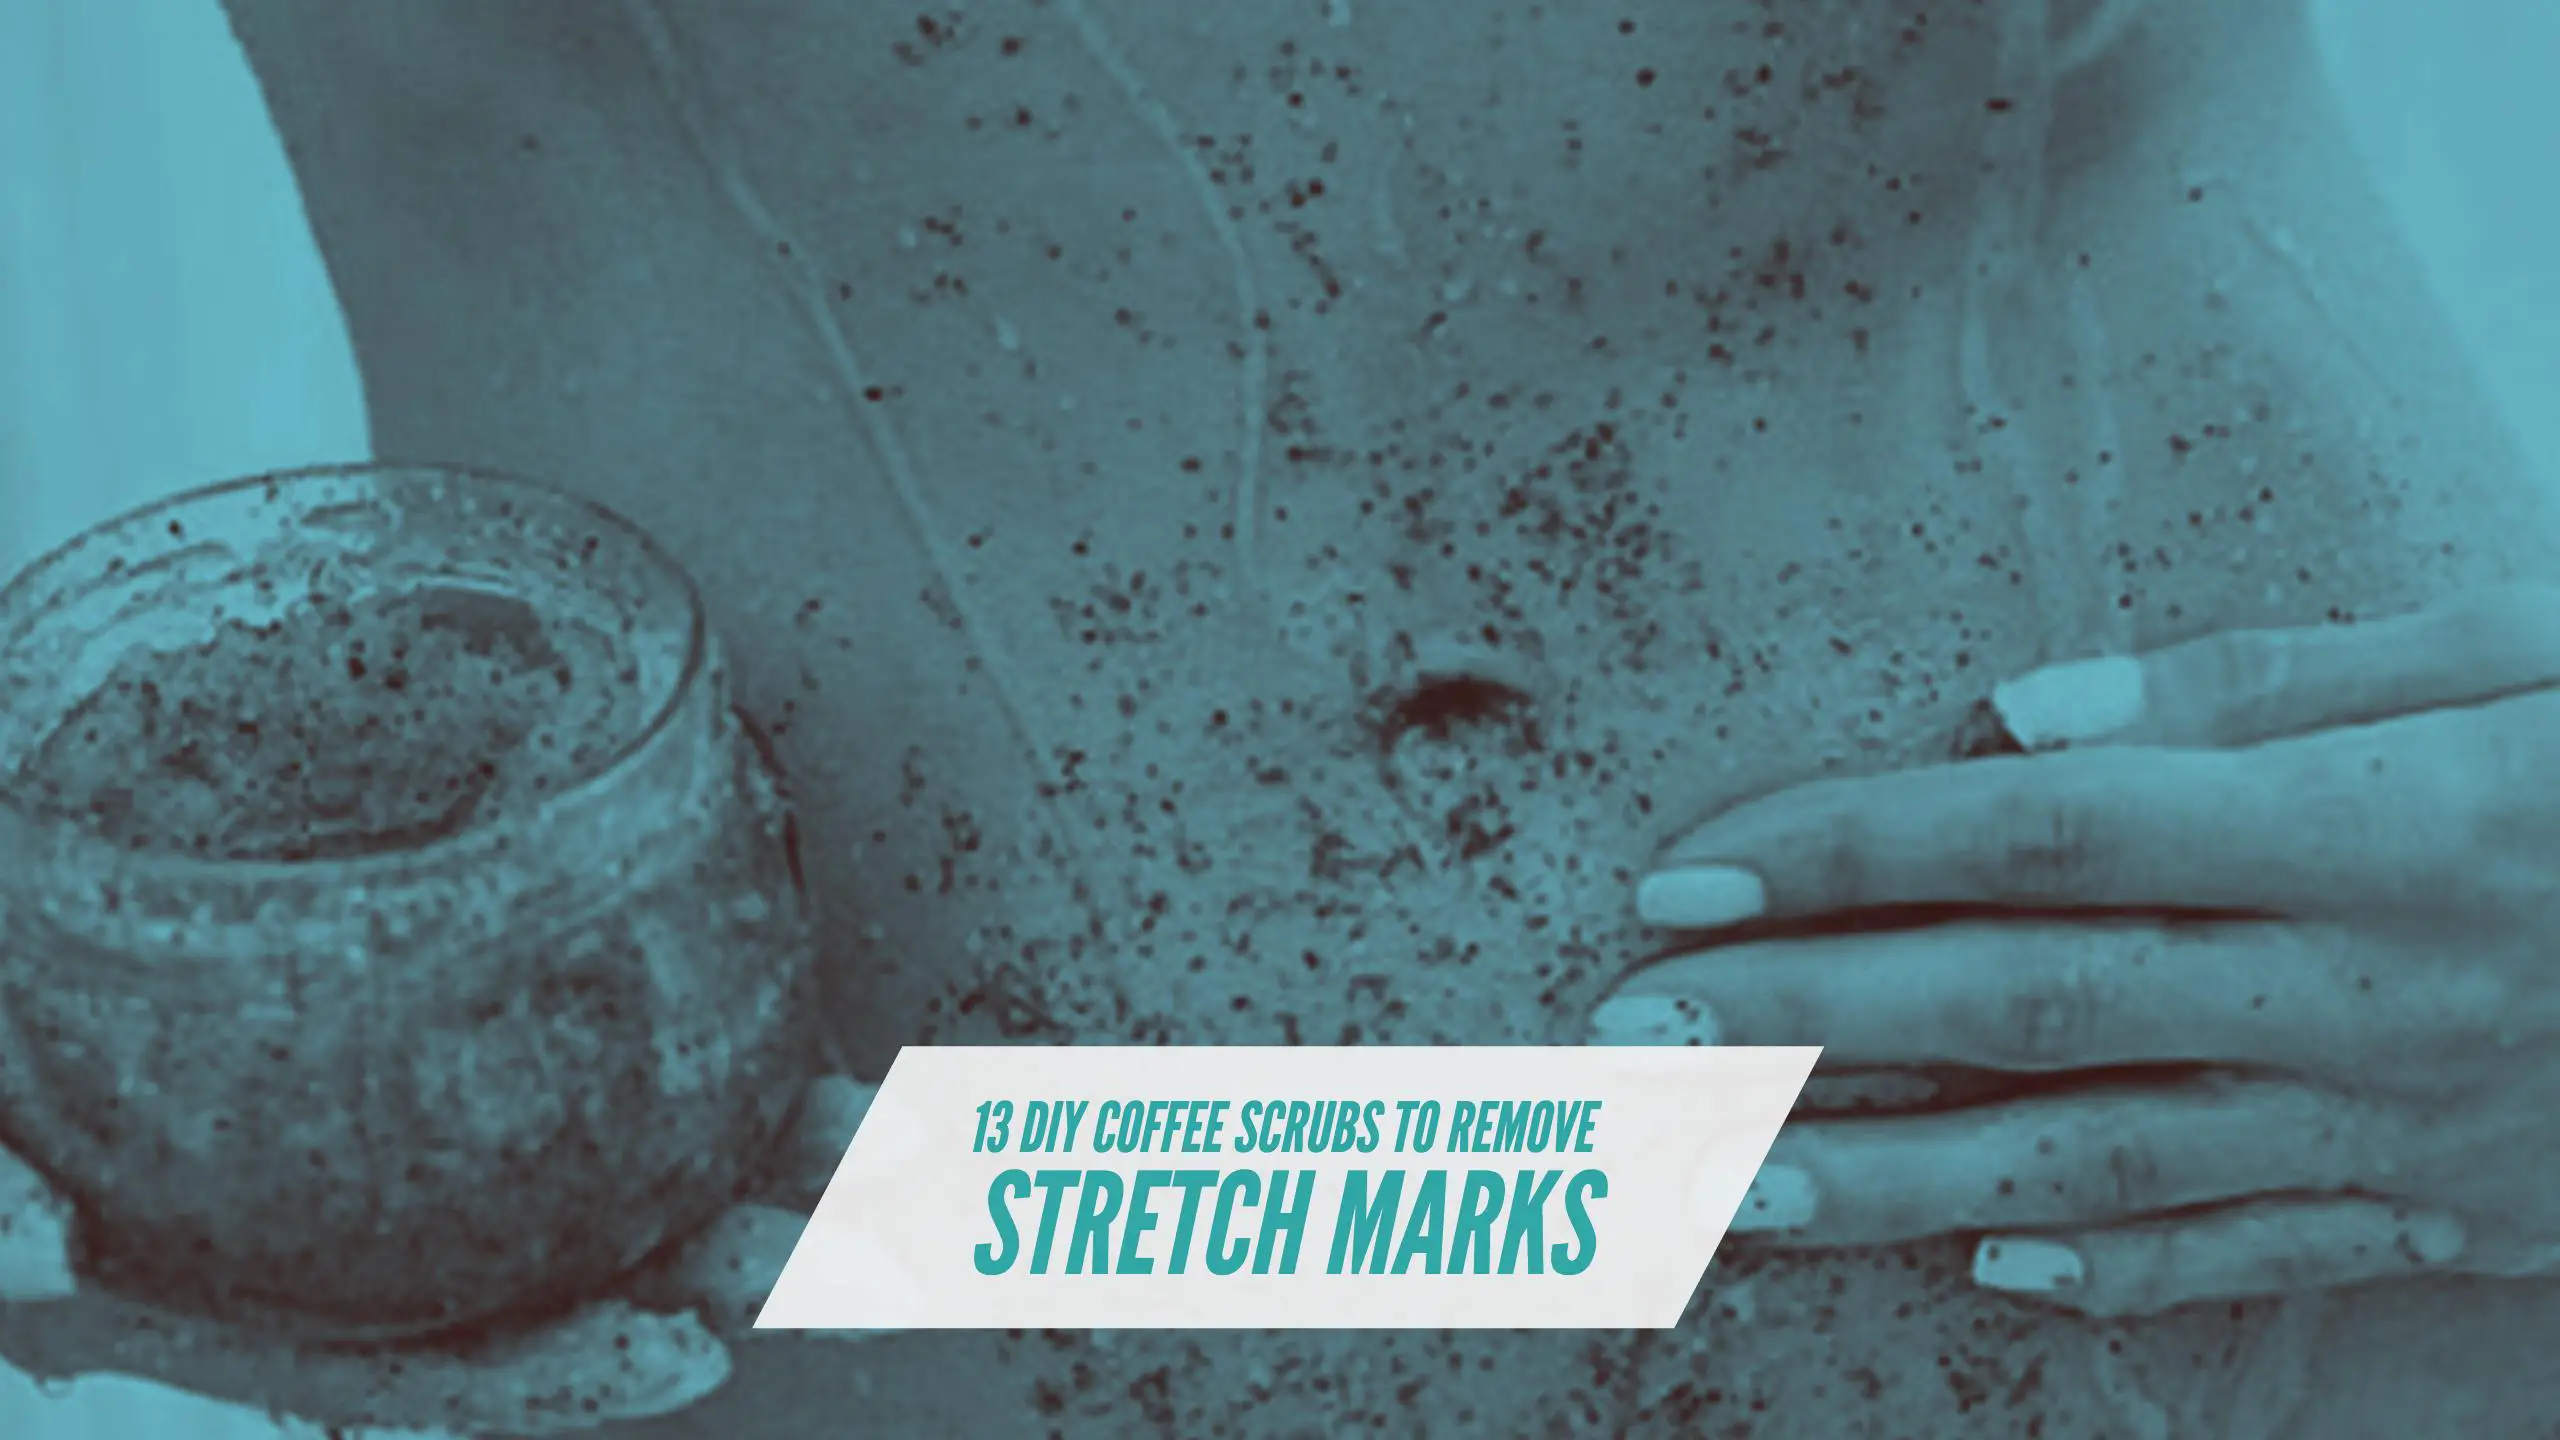 Coffee scrub for stretch marks